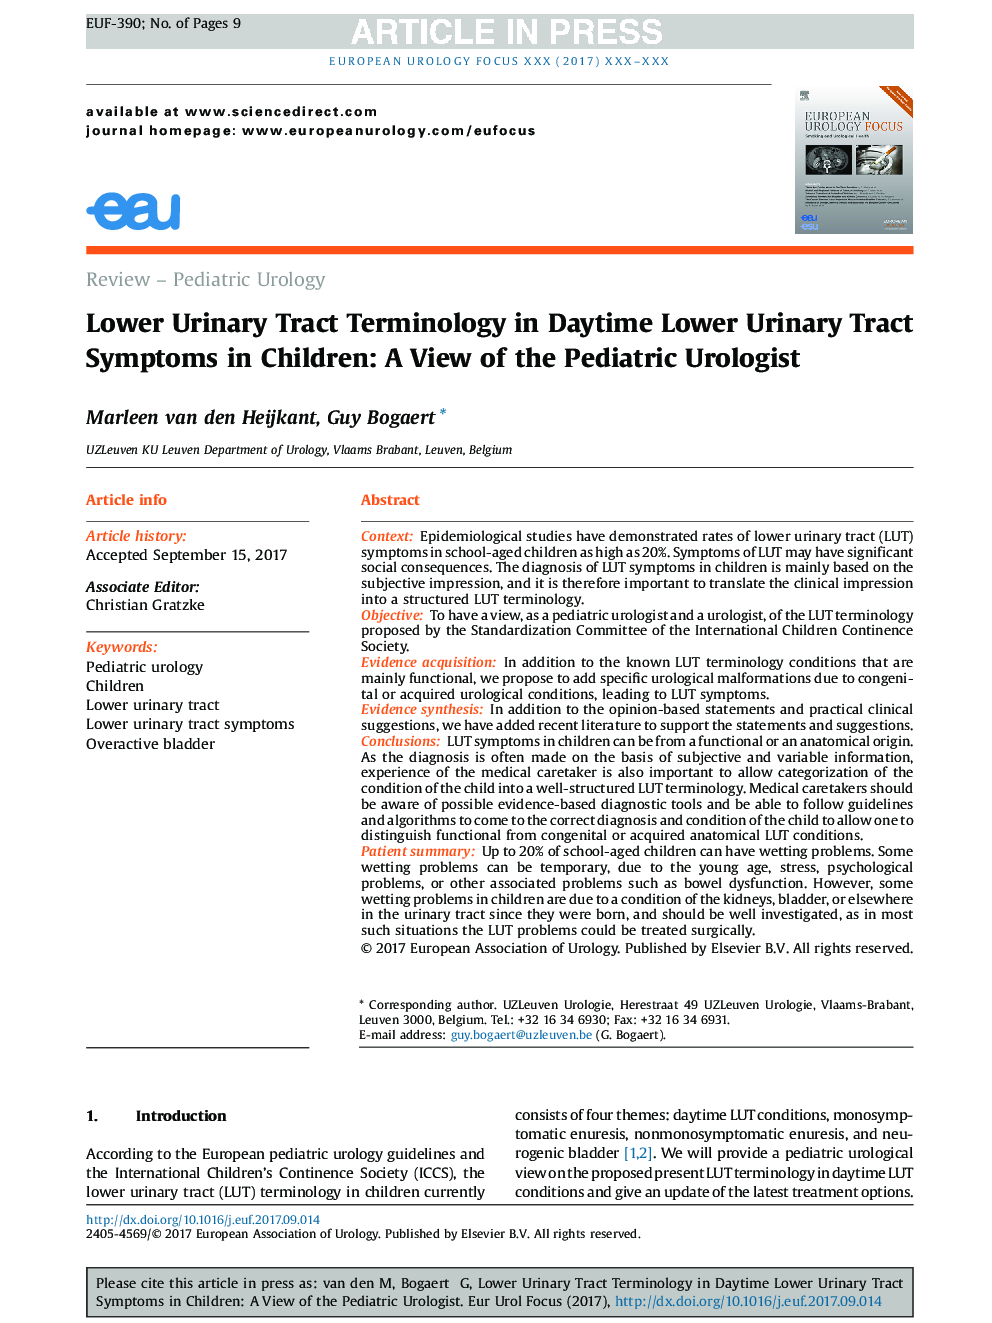 ترمینولوژی ترشح ادرار در نشانه های دستگاه ادراری روزانه در کودکان: دیدگاه اورولوژیست اطفال 